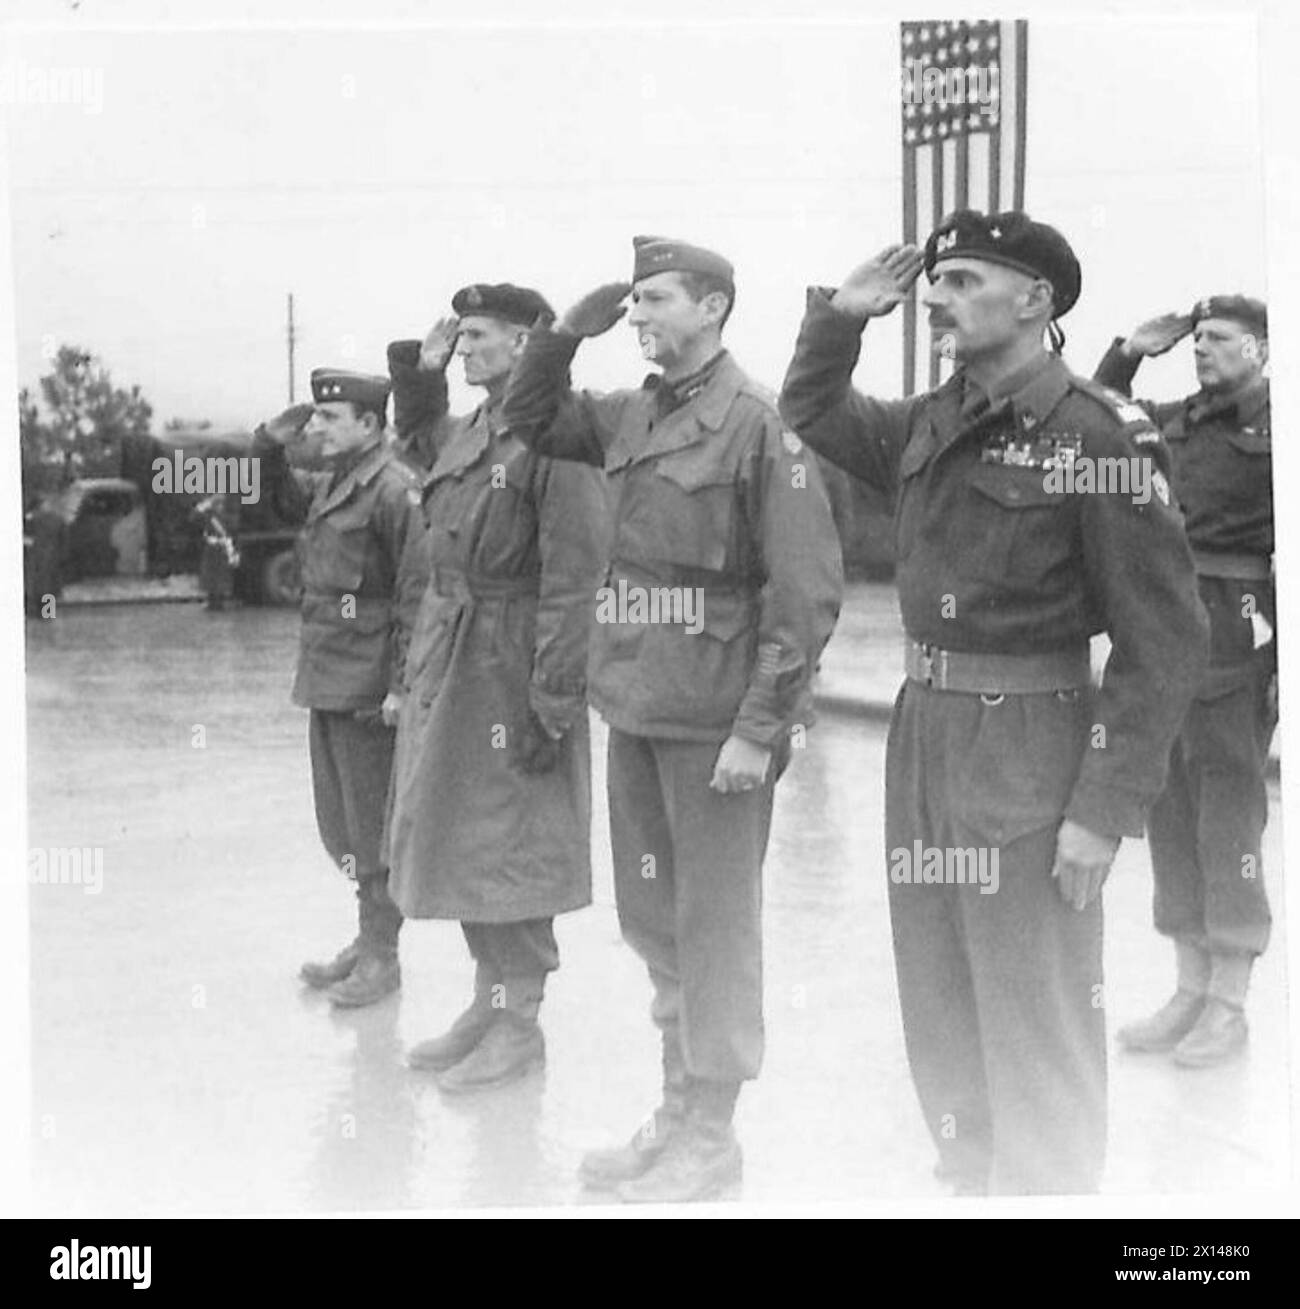 DIE ALLIIERTEN ARMEEN IM ITALIENISCHEN FELDZUG, 1943-1945: General Richard McCreery (2. Von links), General Mark Clark (Mitte) und General Władysław anders (1. Von rechts), die während des Spiels einer Nationalhymne den Gruß nahmen. Leutnant Eugeniusz Lubomirski, Adjutant von General anders, ist in der zweiten Reihe und grüßt. Foto, aufgenommen während Generäle Clark und McCreery im Hauptquartier des 2. Polnischen Korps in Predappio. General Clark wurde während dieses Besuchs auch mit Virtuti Militari dekoriert. Ein AFPU-Kameramann in Schneebarntfarbe filmt polnische Infanteristen, die von einer Patrouille zurückkehren, Stockfoto